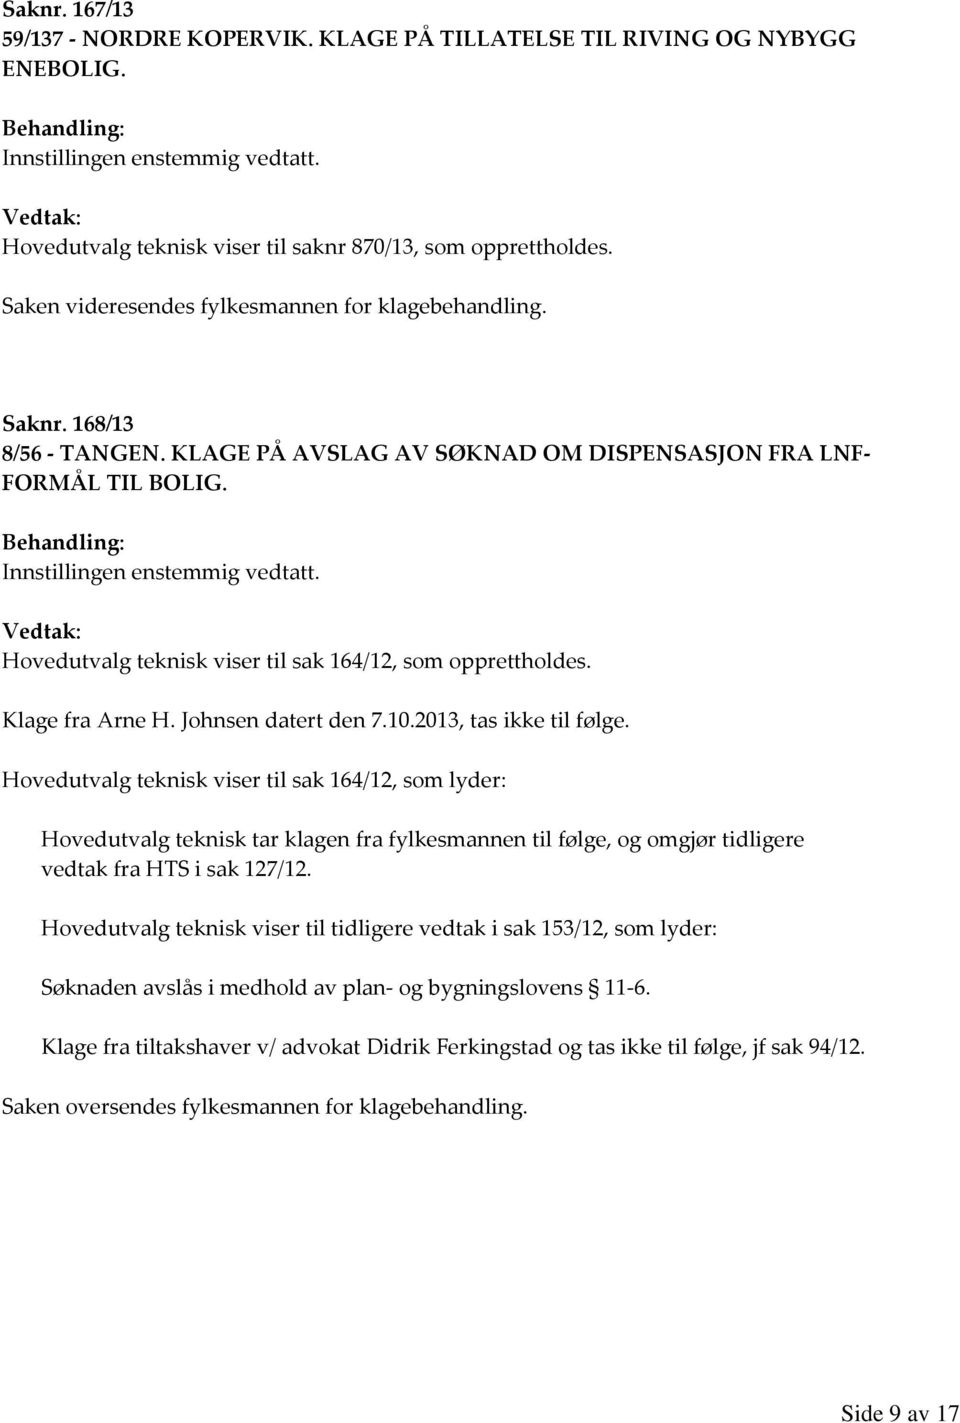 Hovedutvalg teknisk viser til sak 164/12, som opprettholdes. Klage fra Arne H. Johnsen datert den 7.10.2013, tas ikke til følge.